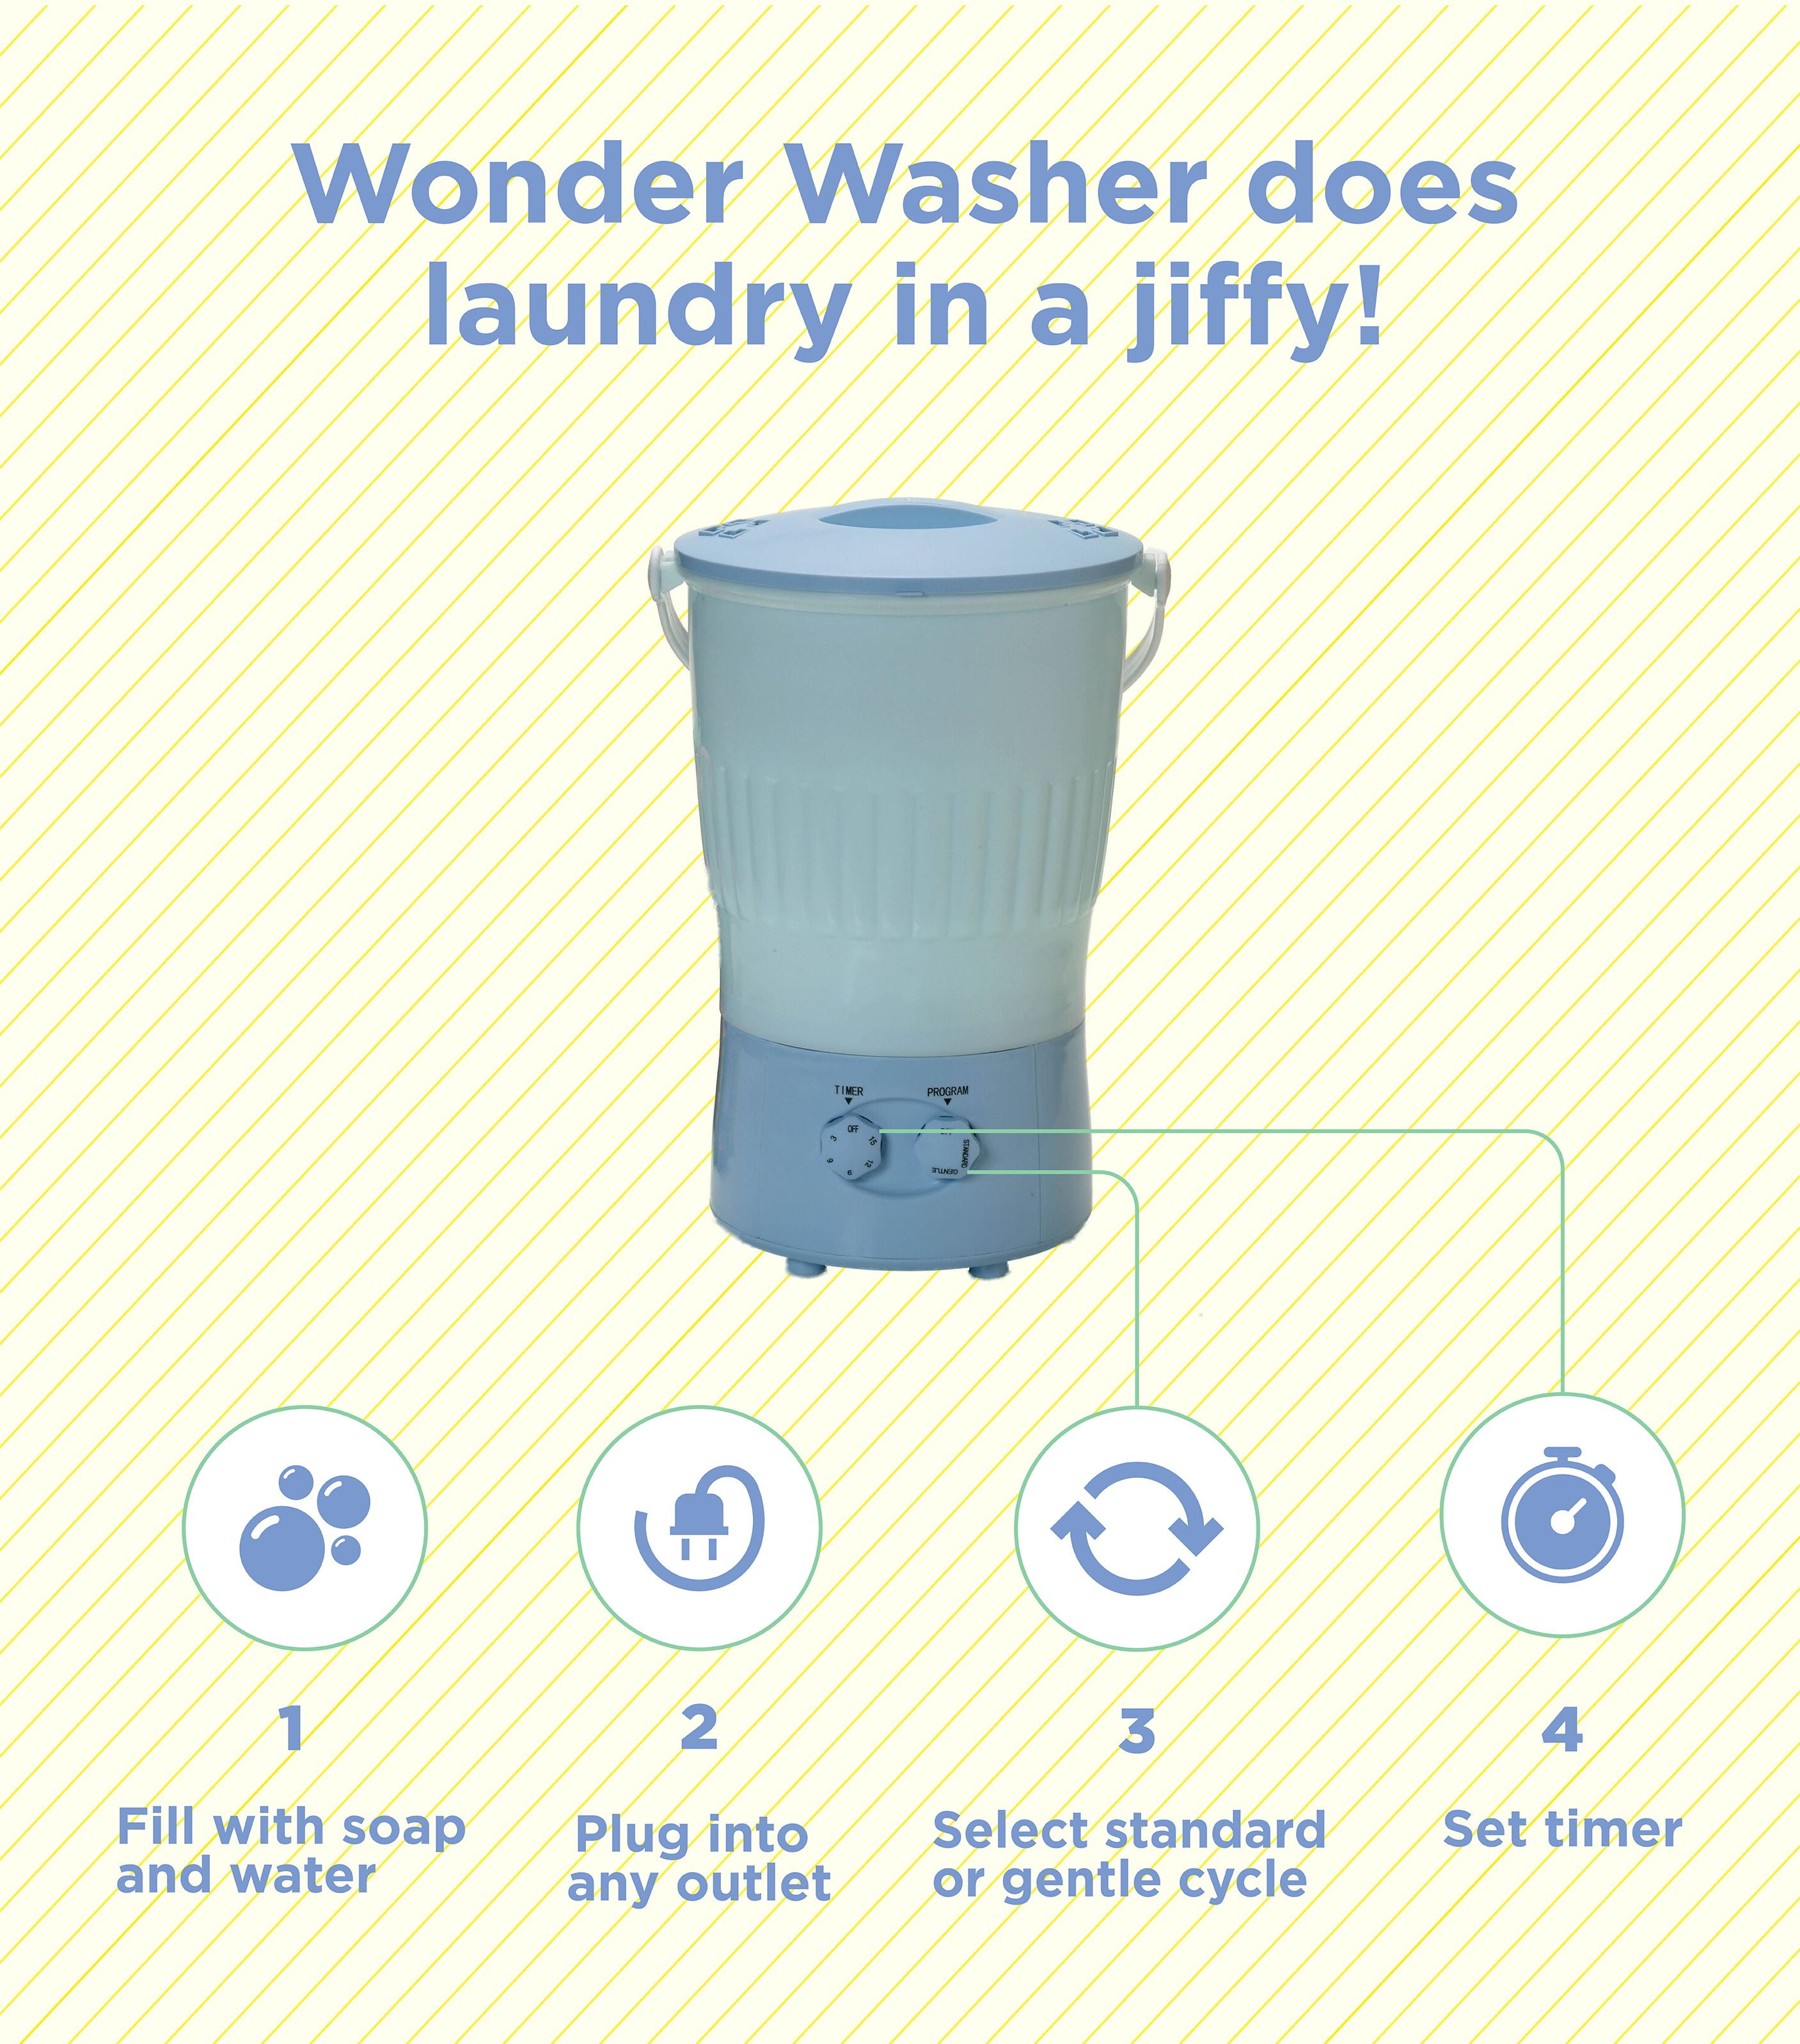 the wonder washer